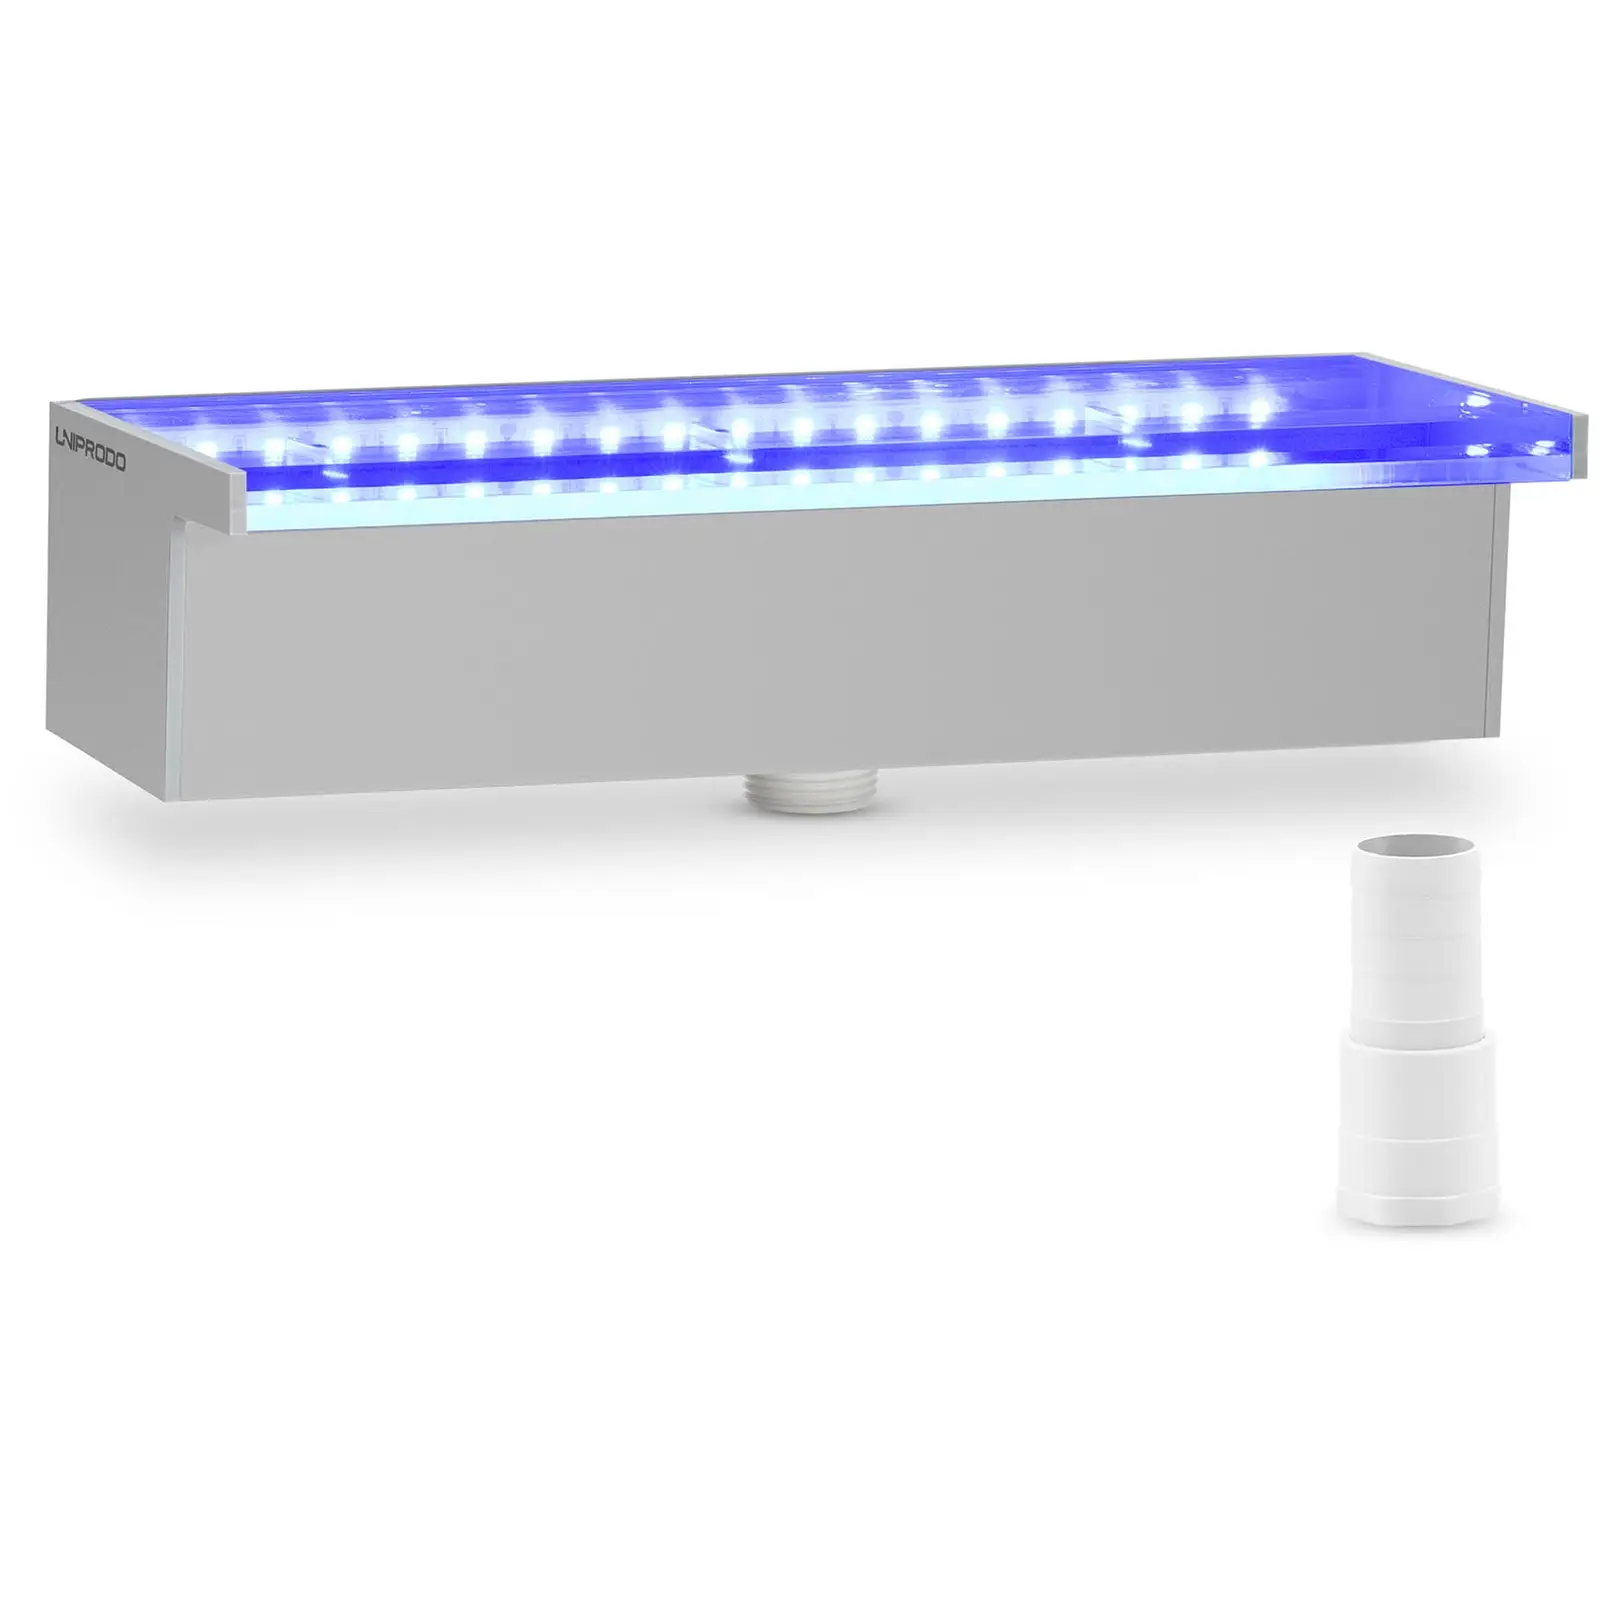 Medence szökőkút - 30 cm - LED világítás - kék/fehér - {{Lip_lenght}} mm-es vízkivezető nyílás